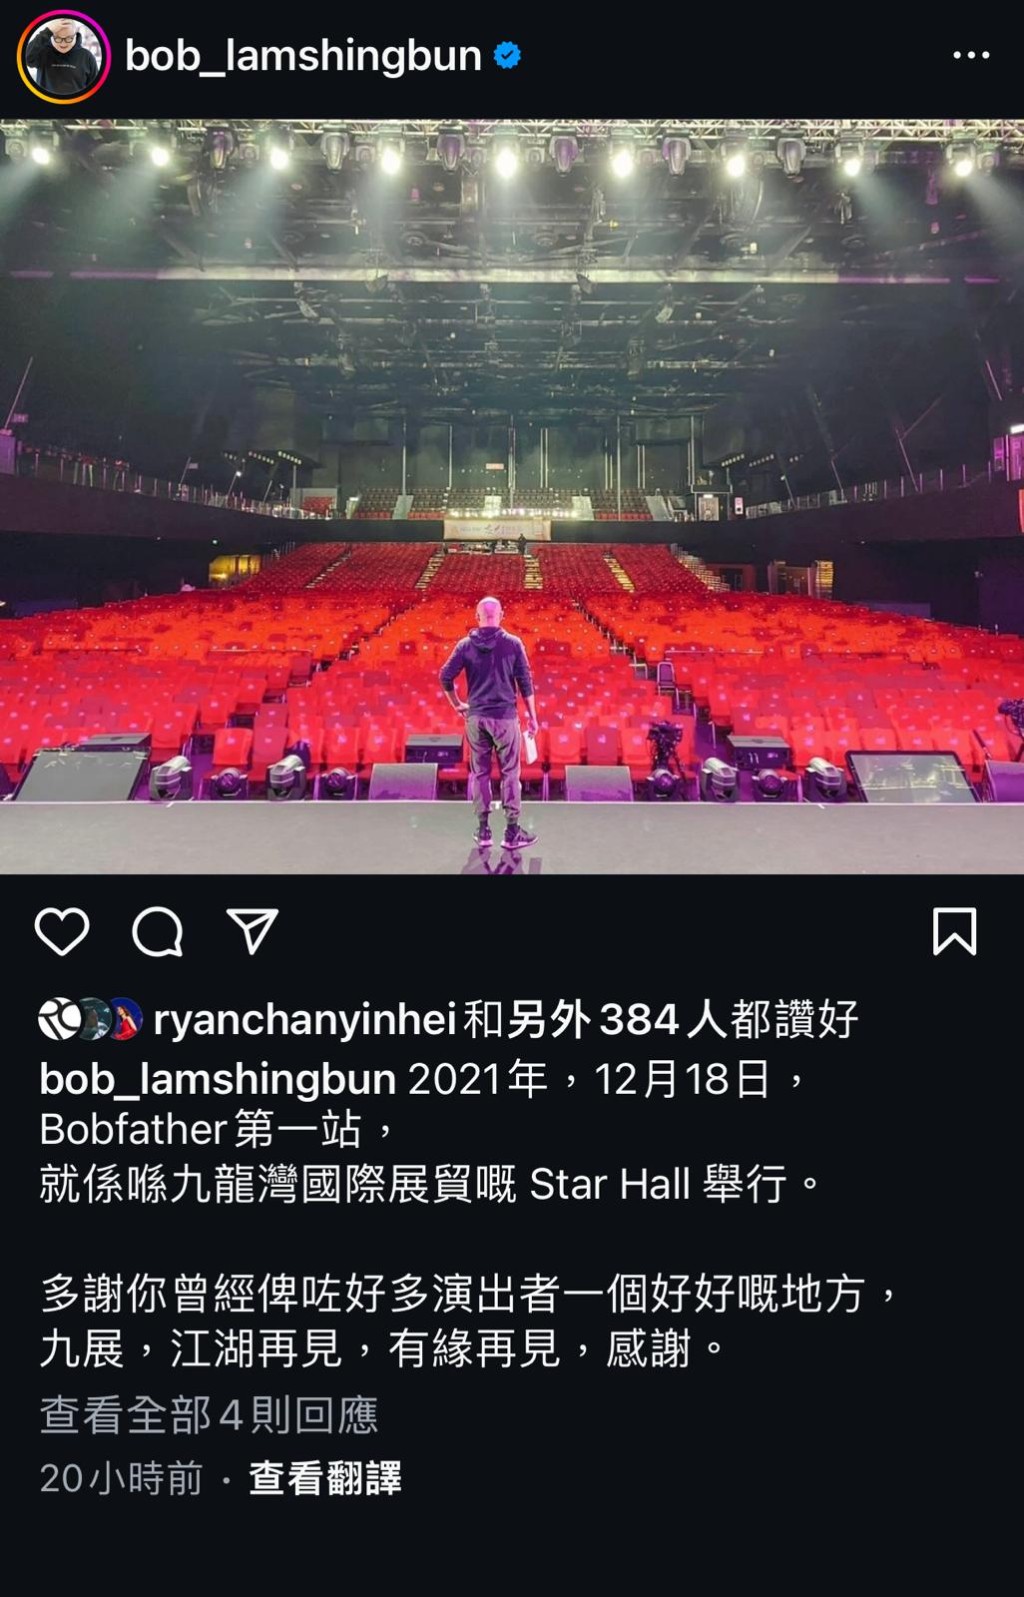 林盛斌曾在2021年12月於Star Hall 舉行《Bobfather》第一站。